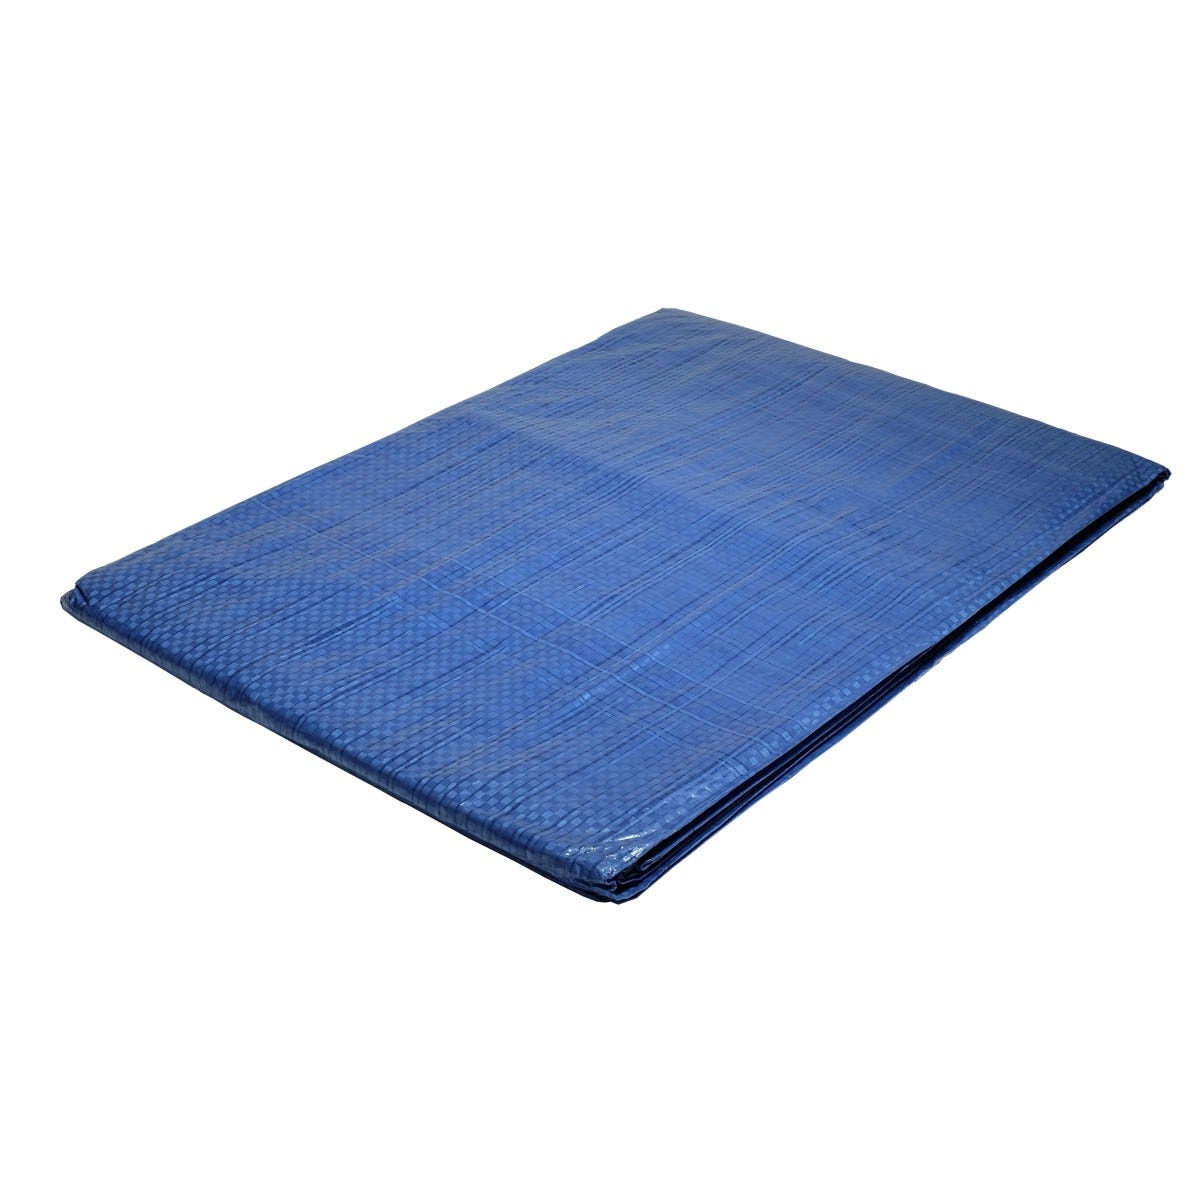 Bâche plastique 5x8 m bleue 80g/m² - bâche de protection polyéthylène 6